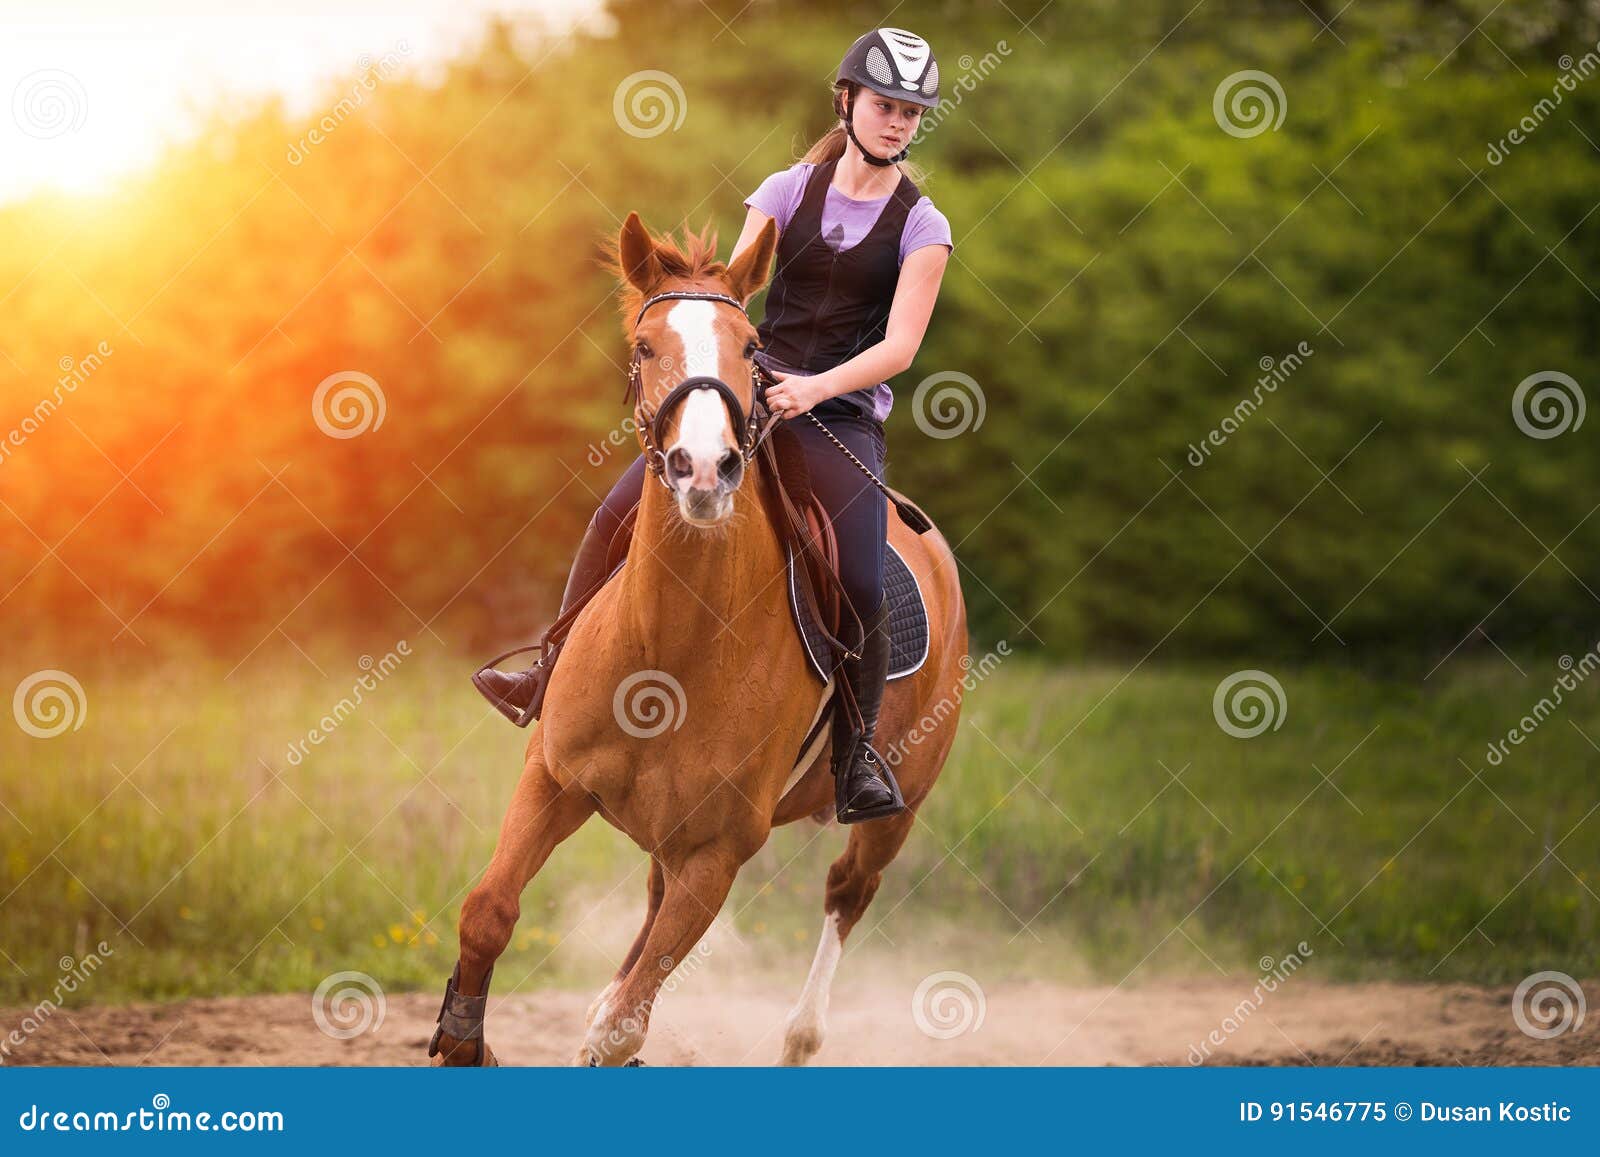 Ехал на коне вел. Ехать на лошади. Конь и женщина. Женщина на лошади. Лошадь едет на лошади.